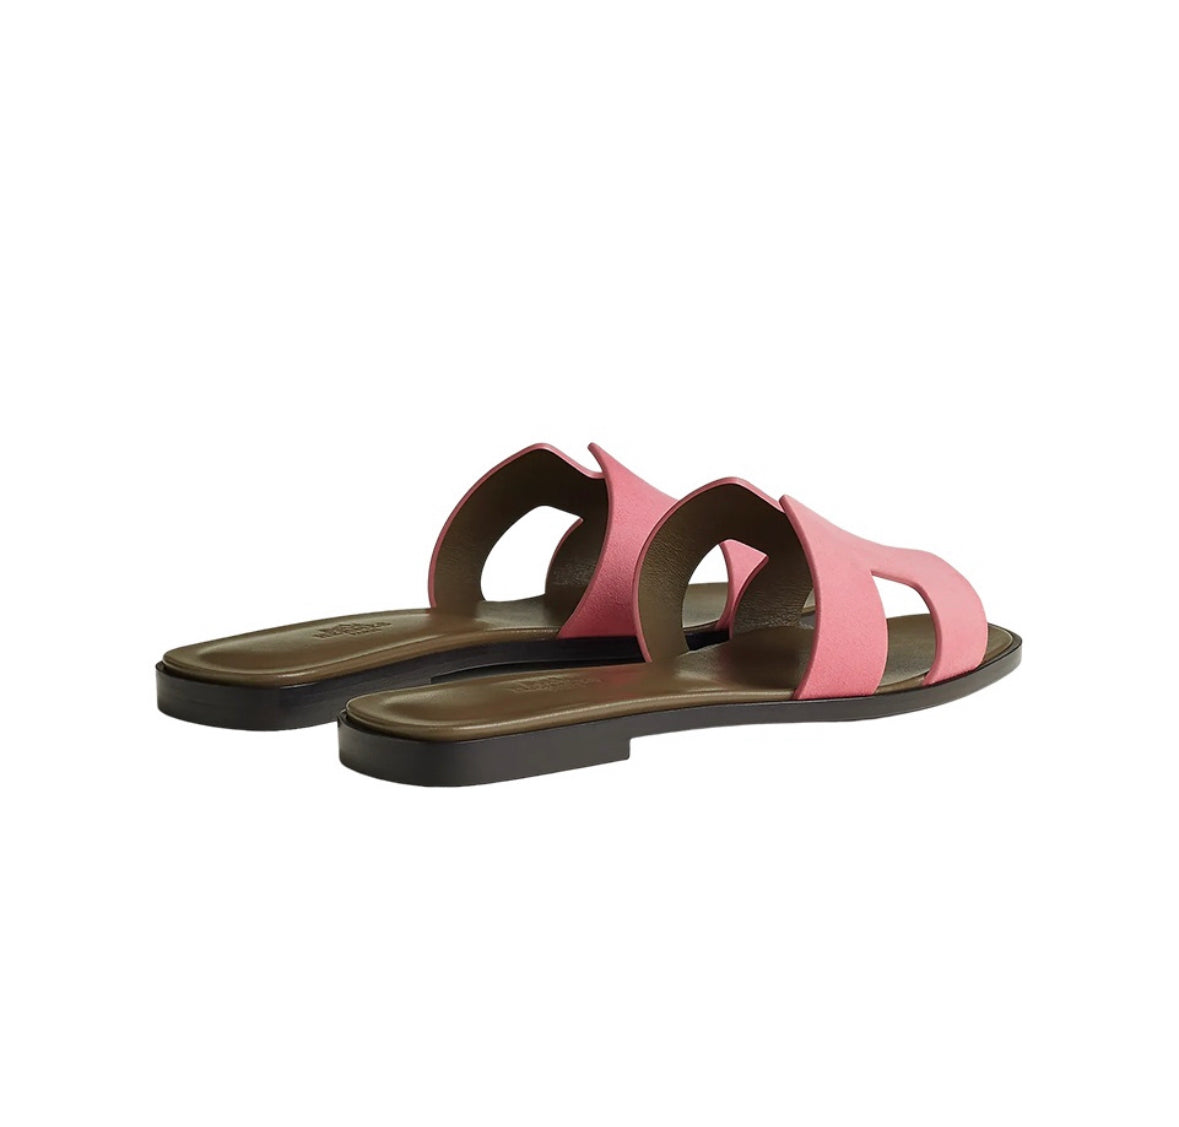 Hermes Oran Sandals “Olive/Pink”